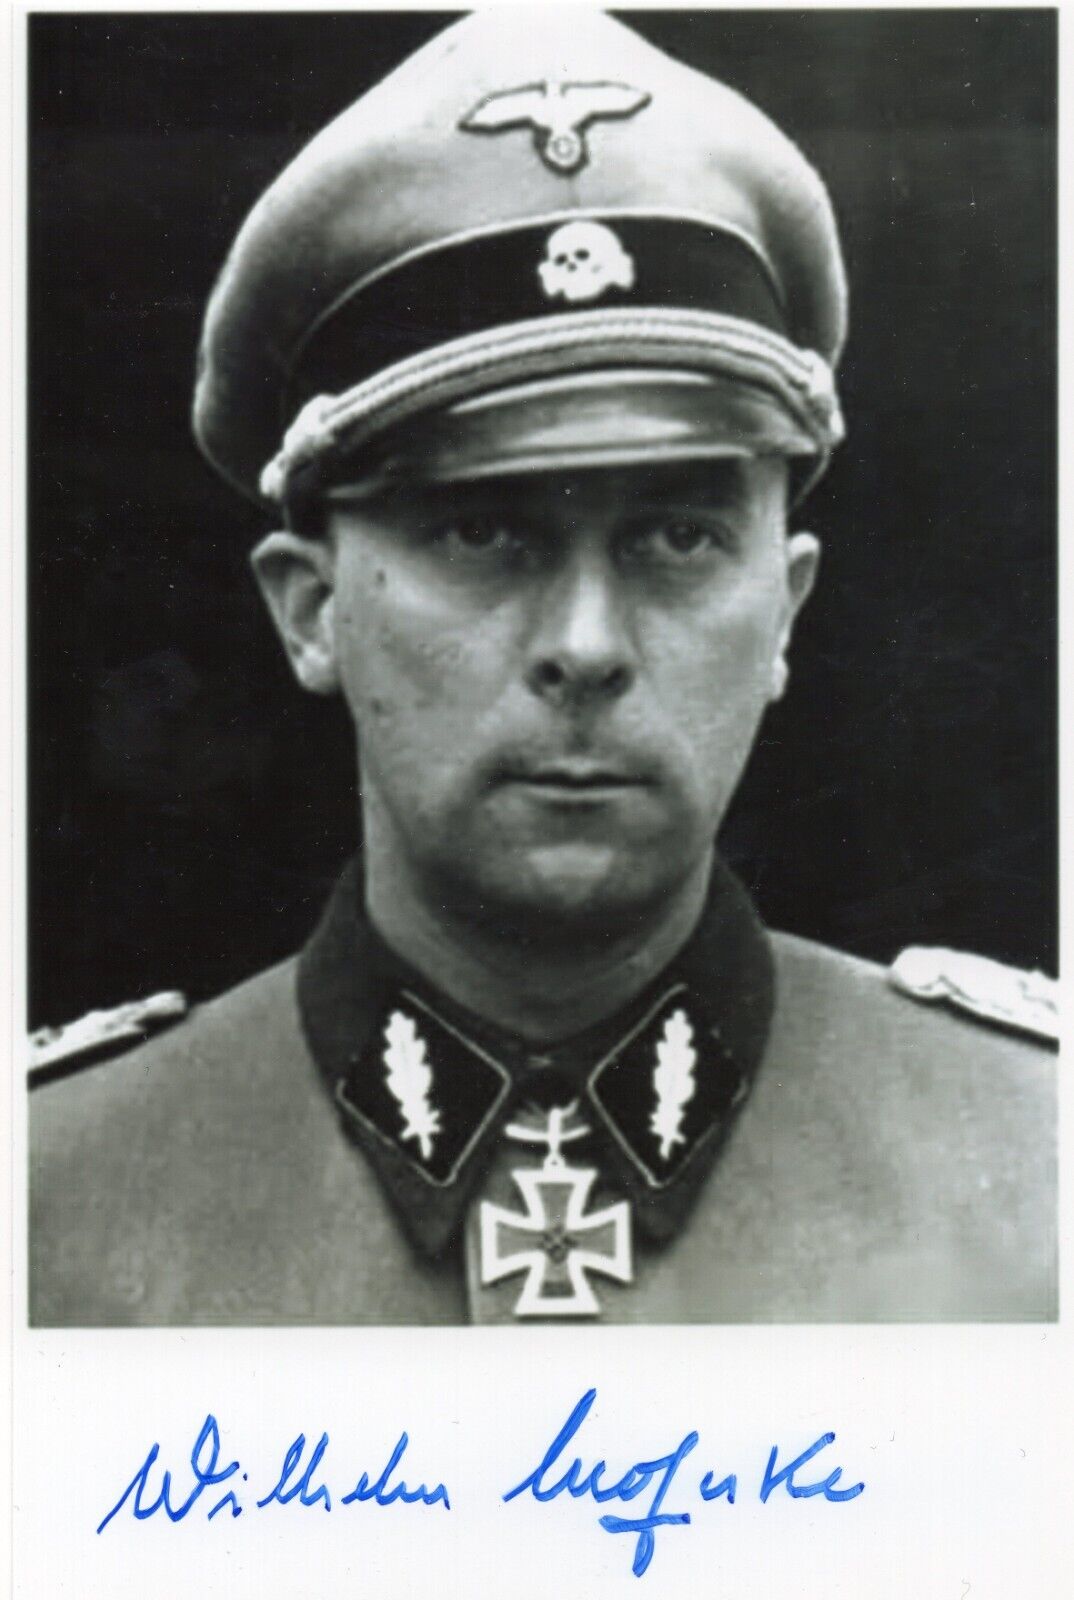 WILHELM MOHNKE - Elite General and Knight\'s Cross winner - signed photo